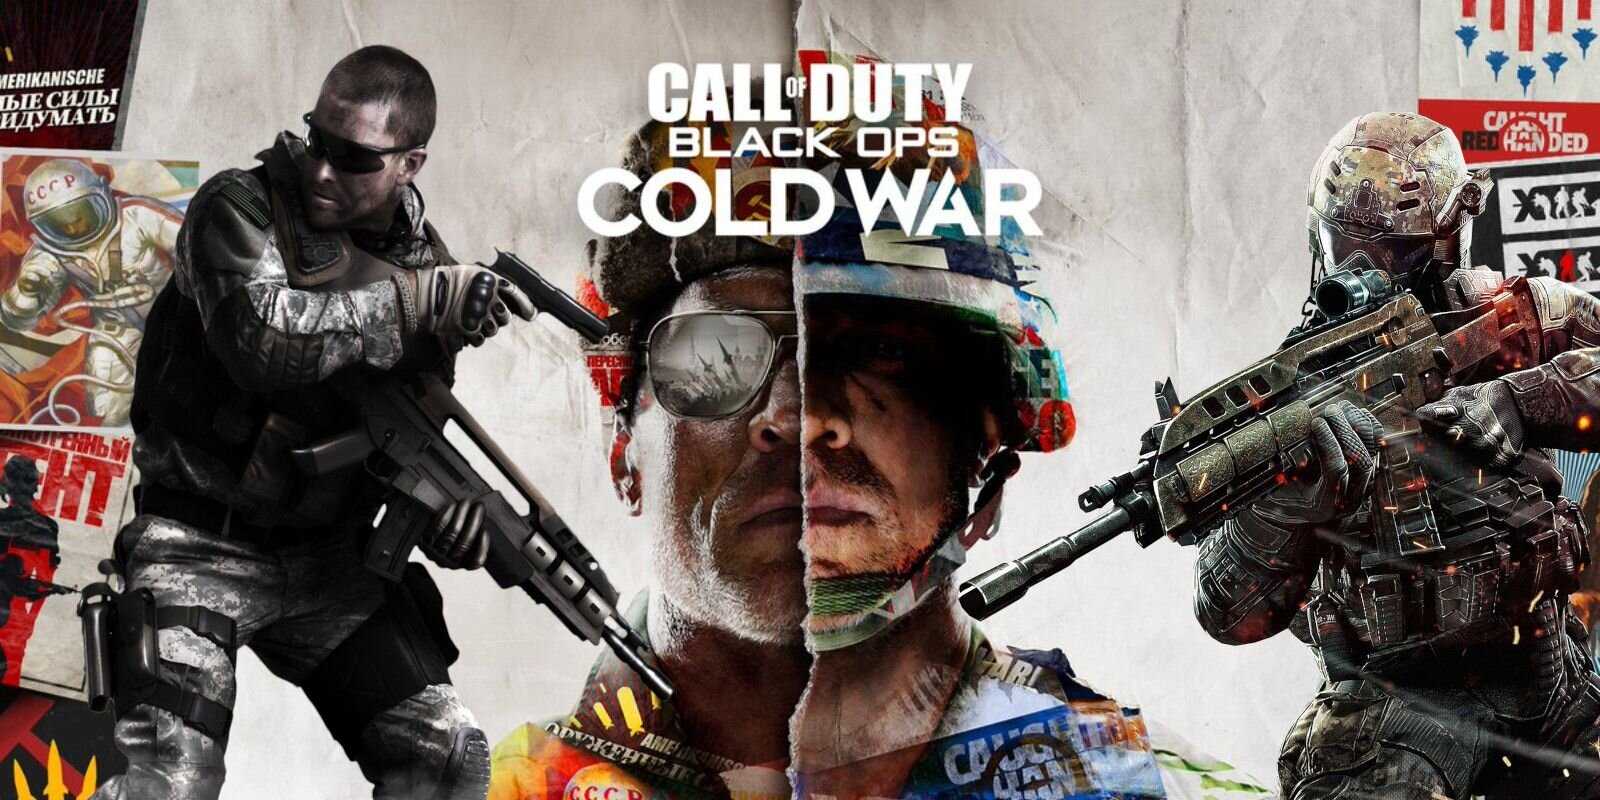 Call of Duty Black Ops Cold War Multiplayer and Outbreak Mode disponible au téléchargement gratuit jusqu'au 1er juin